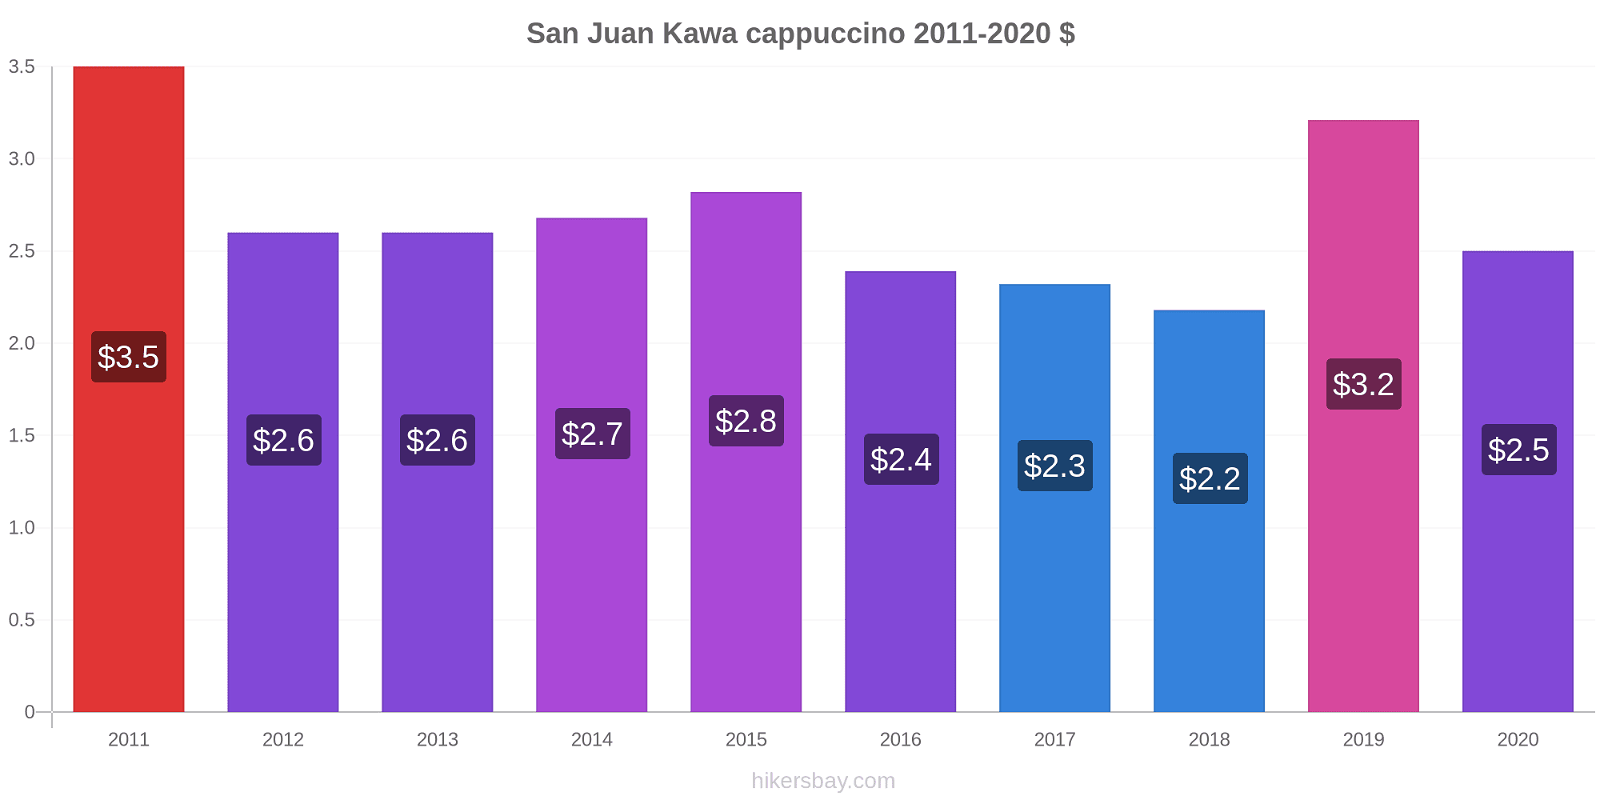 San Juan zmiany cen Kawa cappuccino hikersbay.com